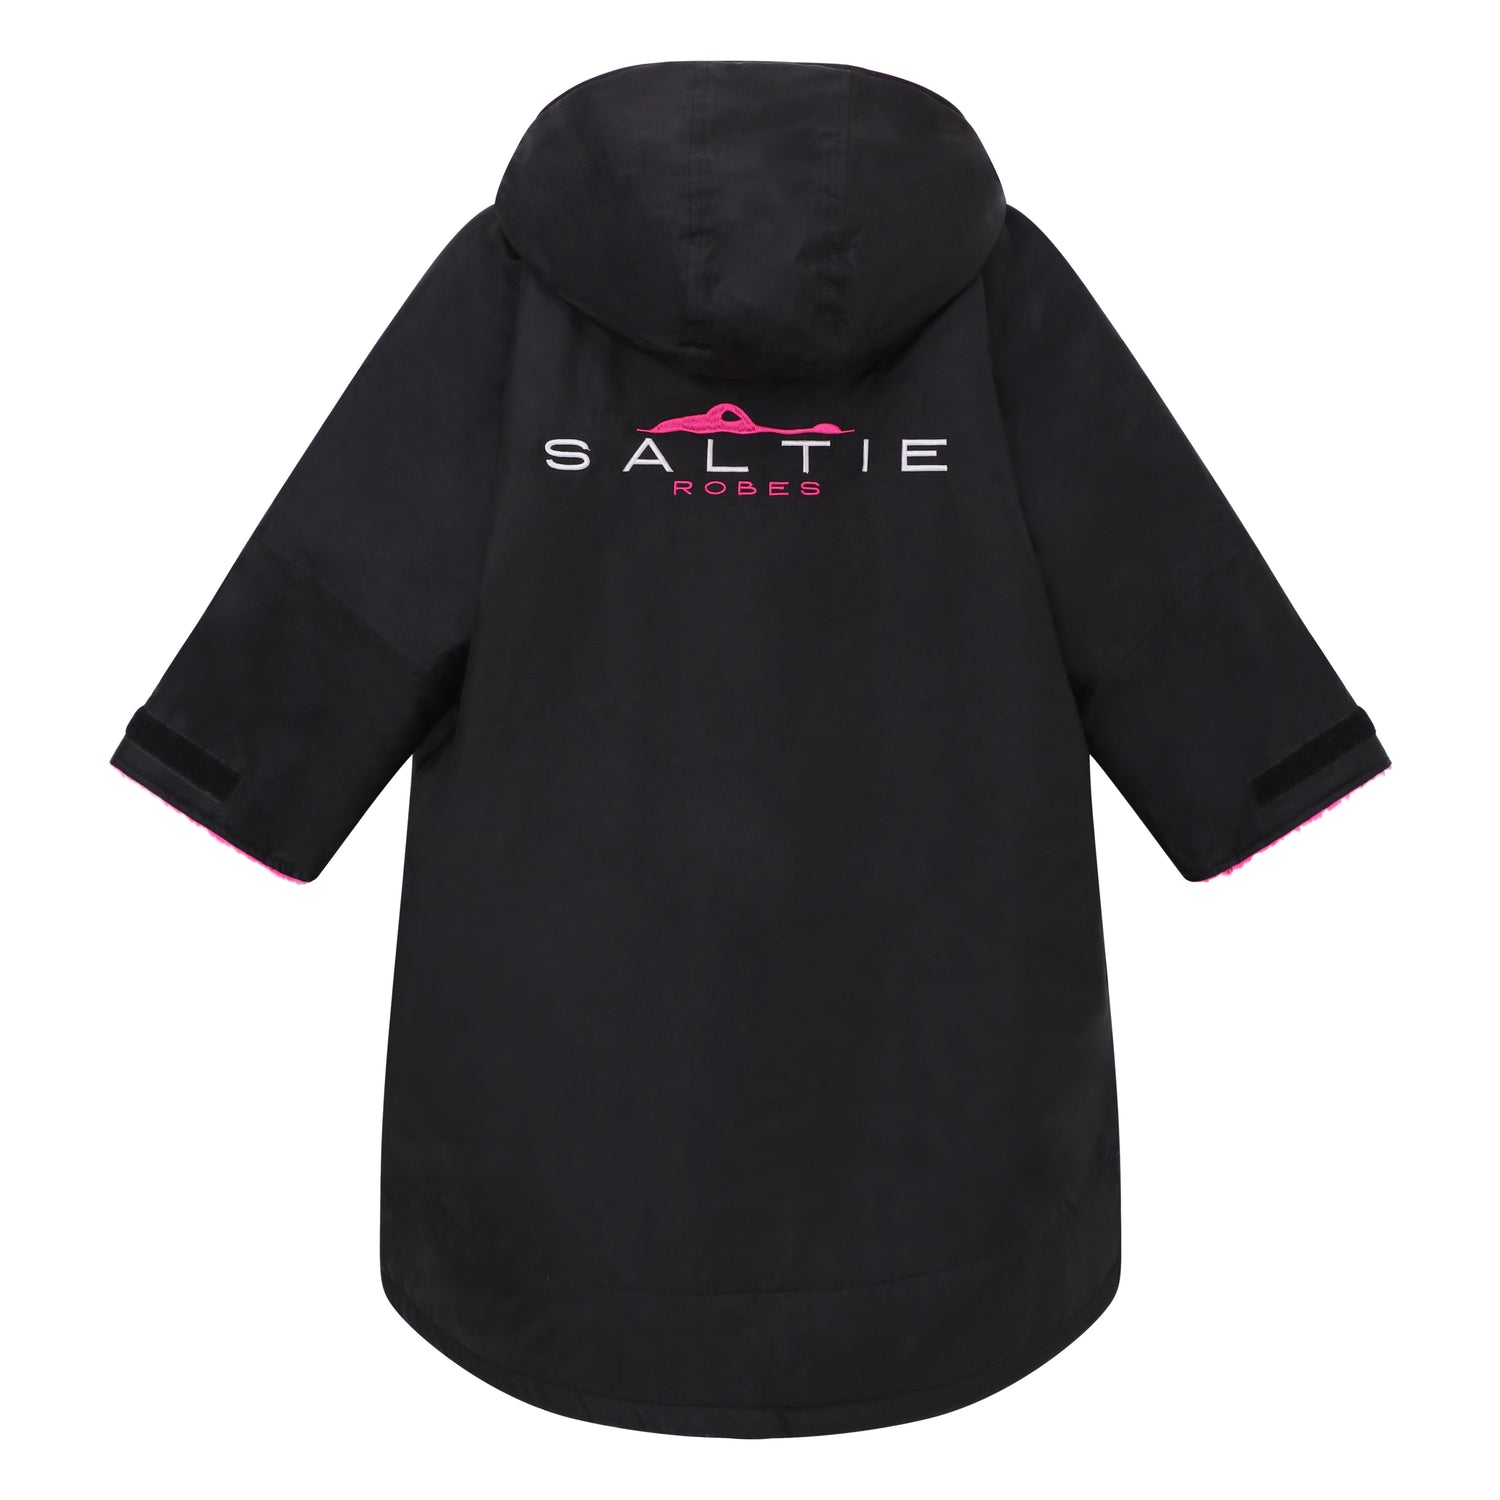 Saltie Junior Changing Robe - Black/Hot Pink